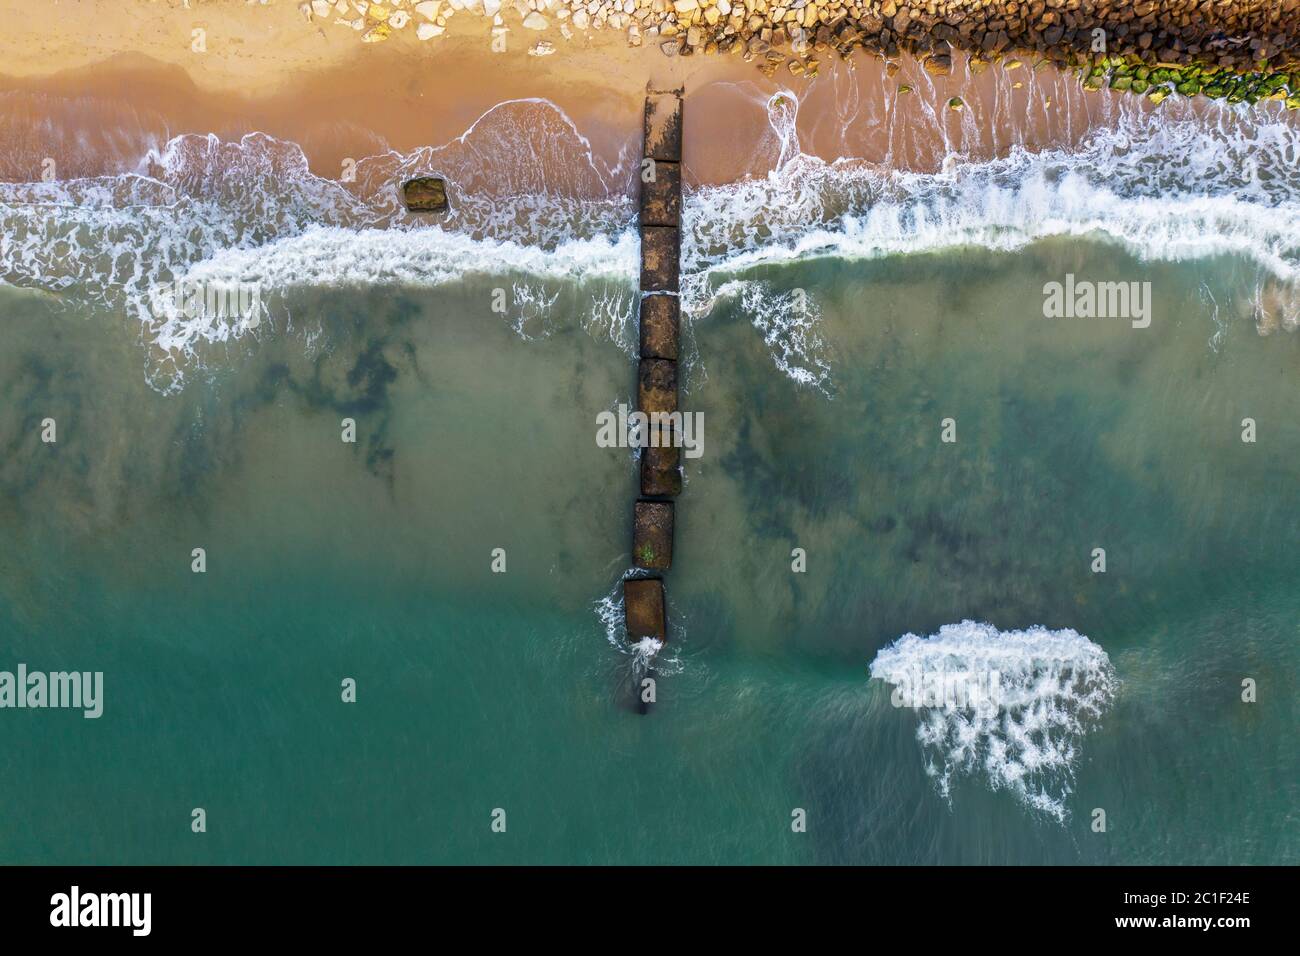 Photographie de drone tourné au-dessus de l'environnement rocheux avec des couleurs étonnantes. Banque D'Images